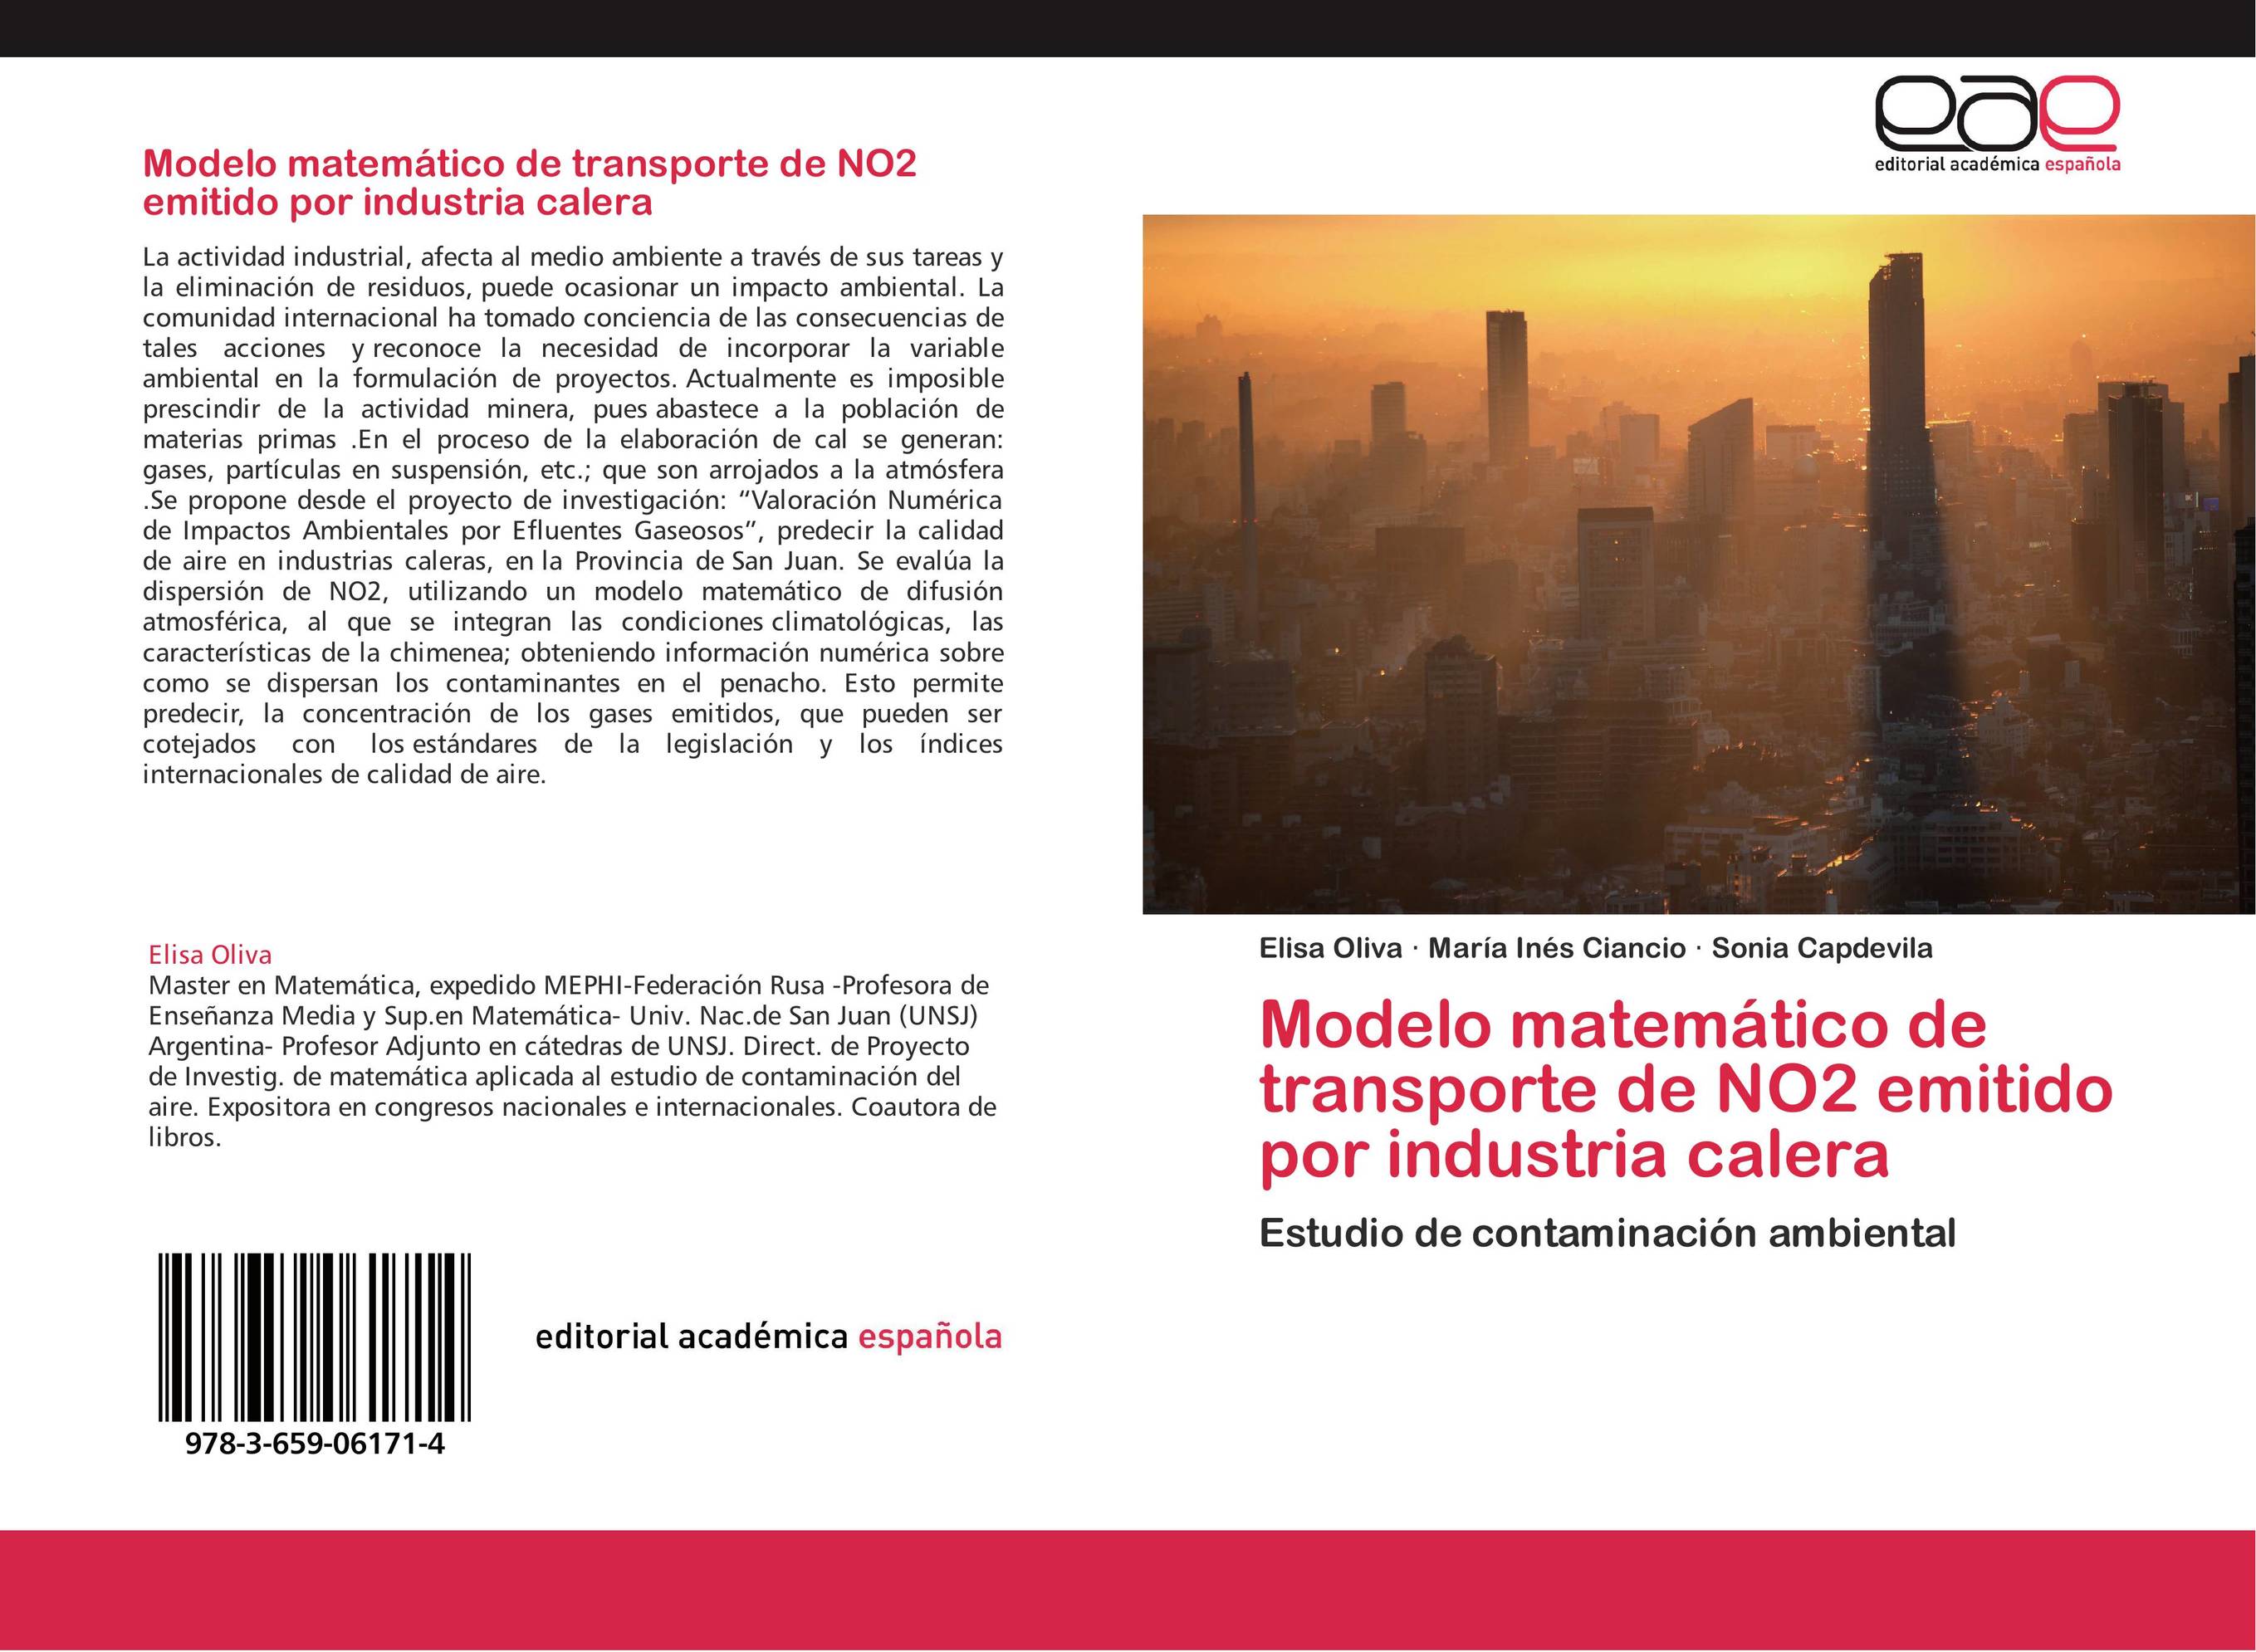 Modelo matemático de transporte de NO2 emitido  por industria calera